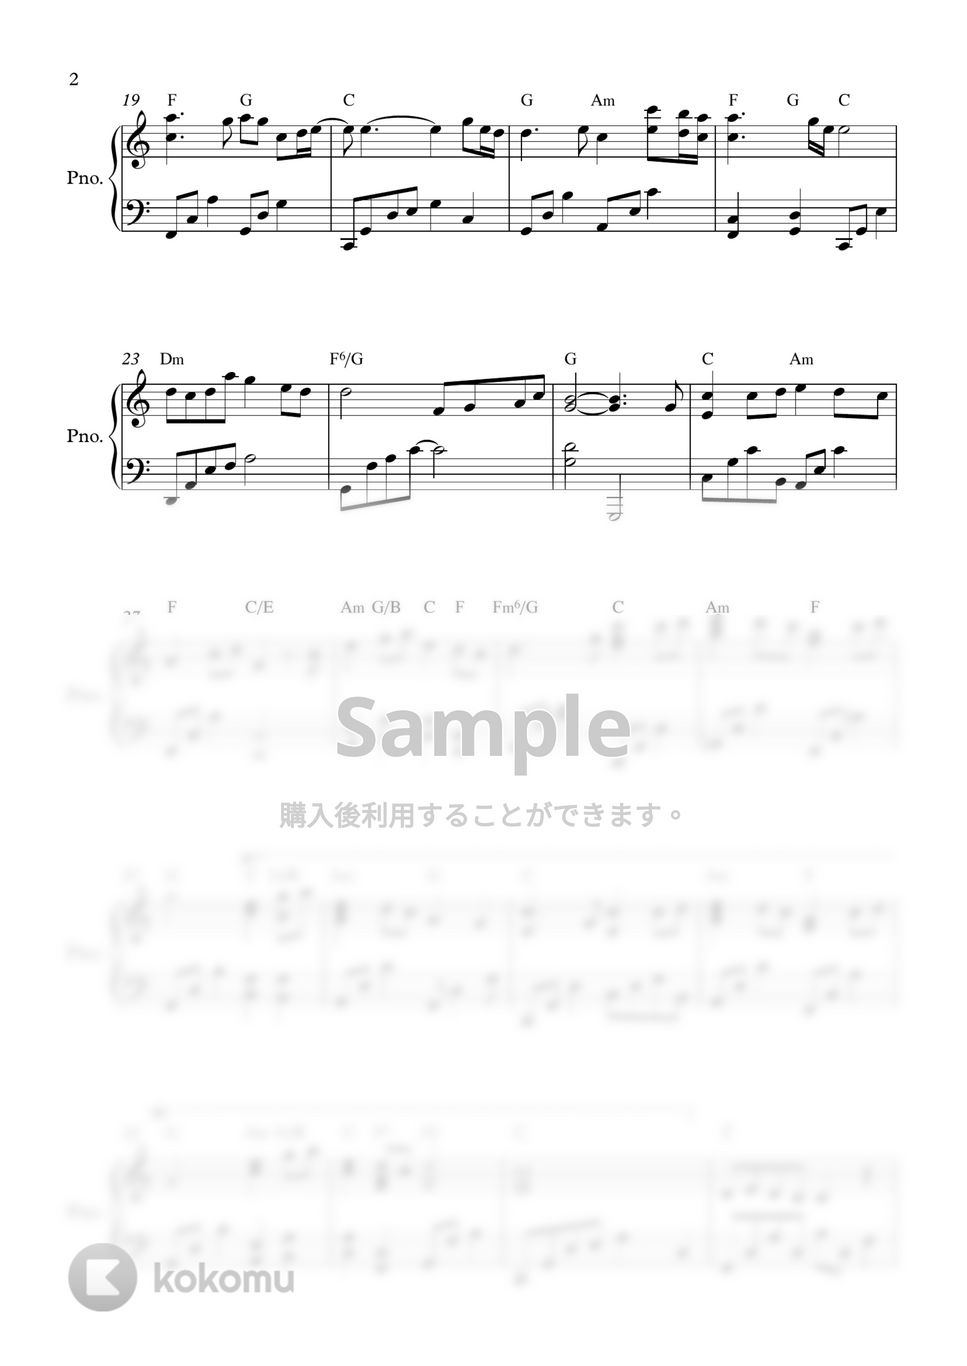 ソン・ガイン(愛の不時着 OST) - 心の写真 by PIANOiNU